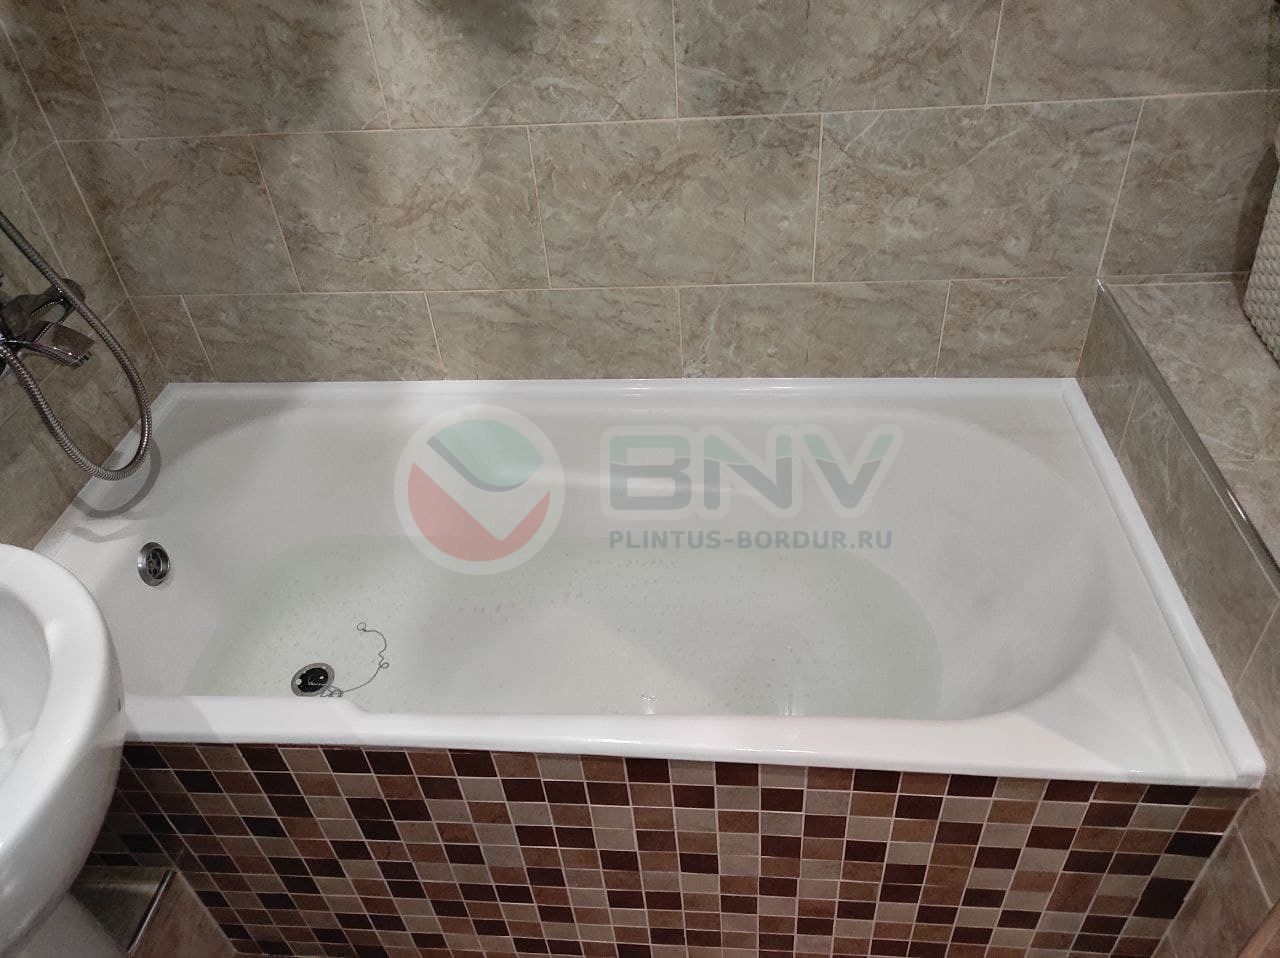 Комплект акриловых бордюров для ванной (3 шт) ПШ24 интернет-магазин BNV